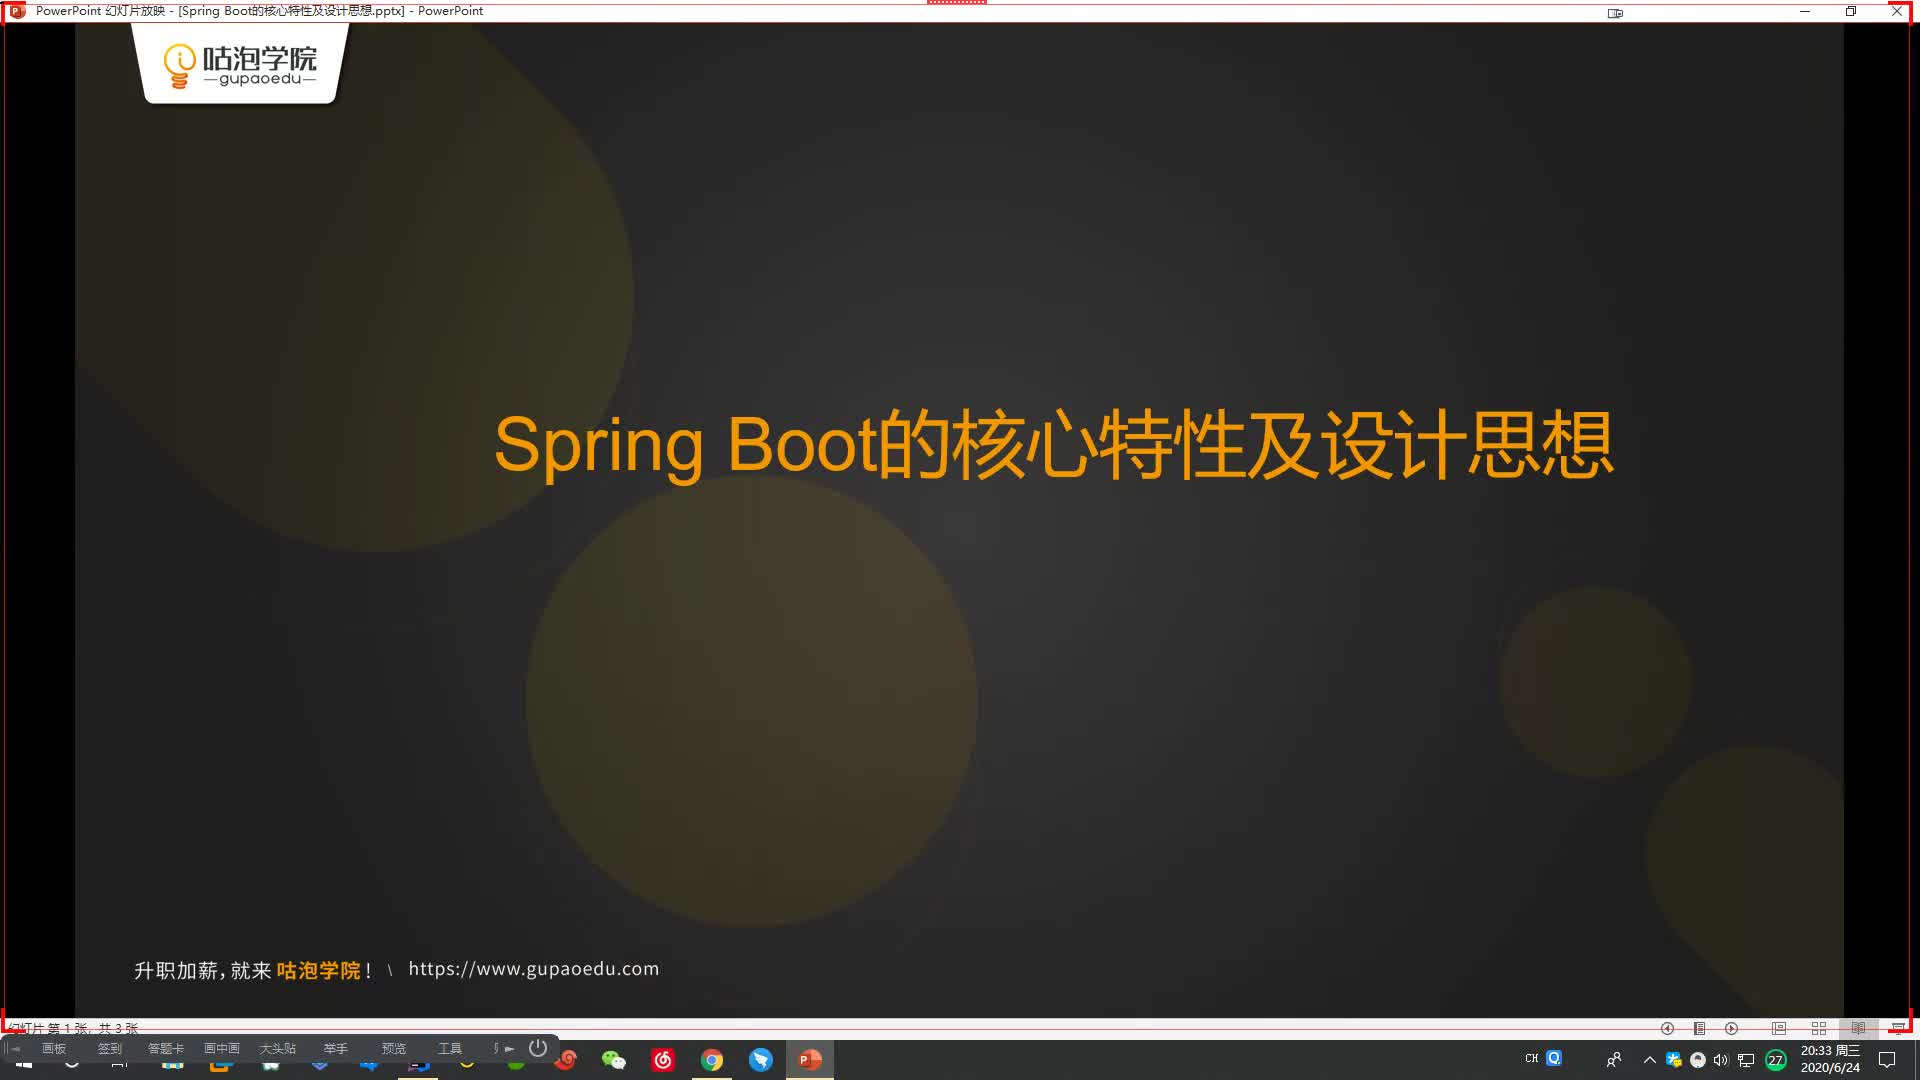 第三阶段4.1.3：Spring Boot的核心特性及设计思想